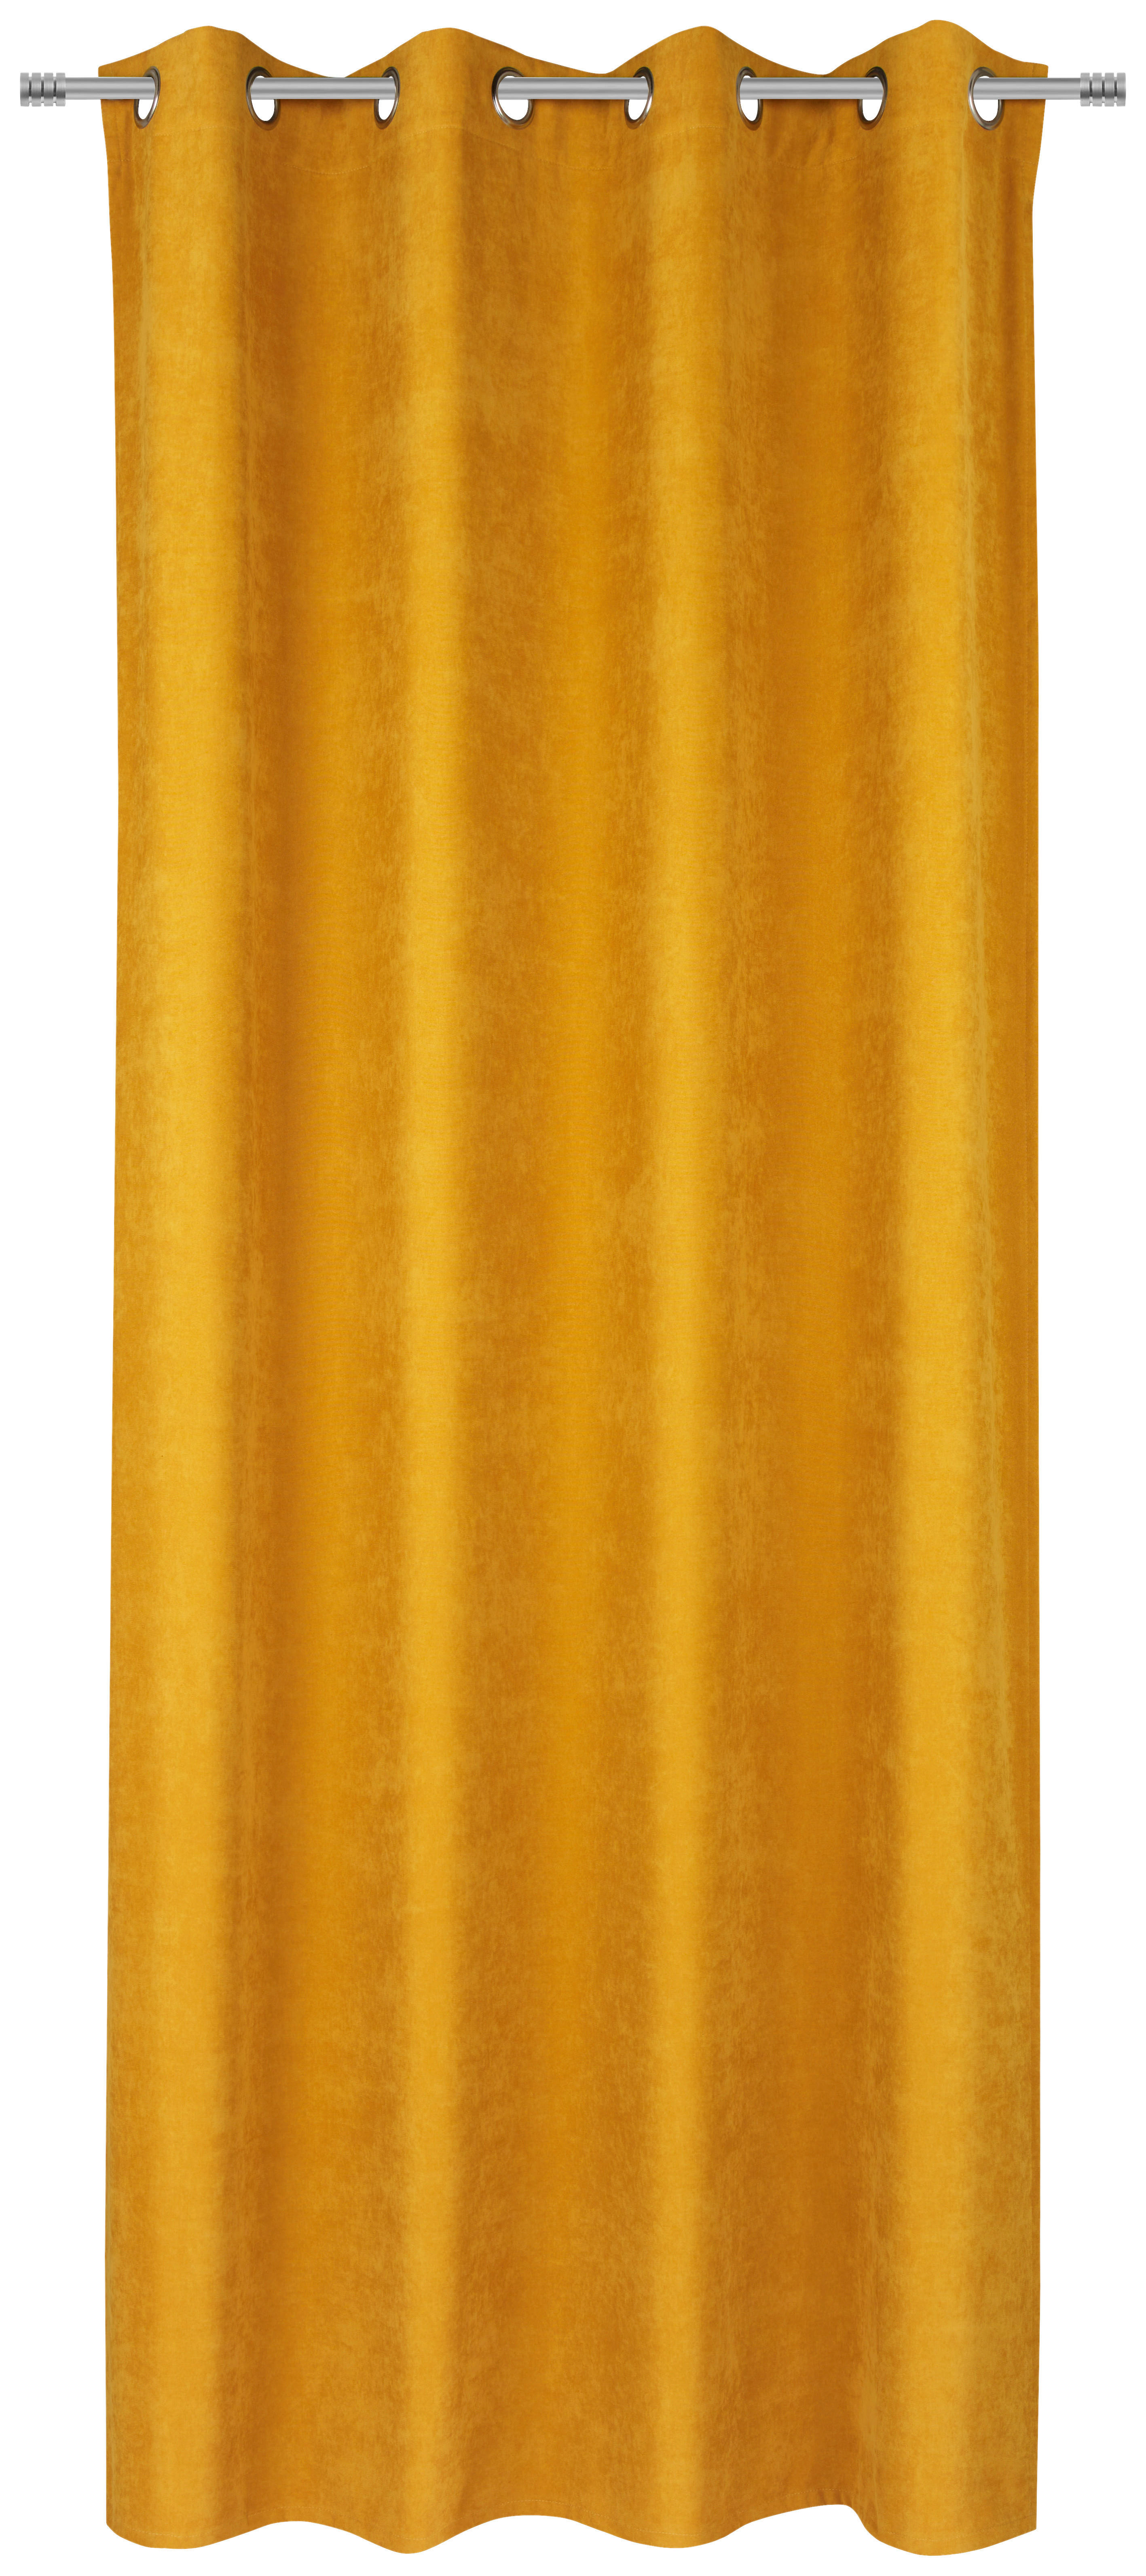 ZAVESA SA KARIKAMA žuta - žuta, Konvencionalno, tekstil (140/245cm) - Esposa